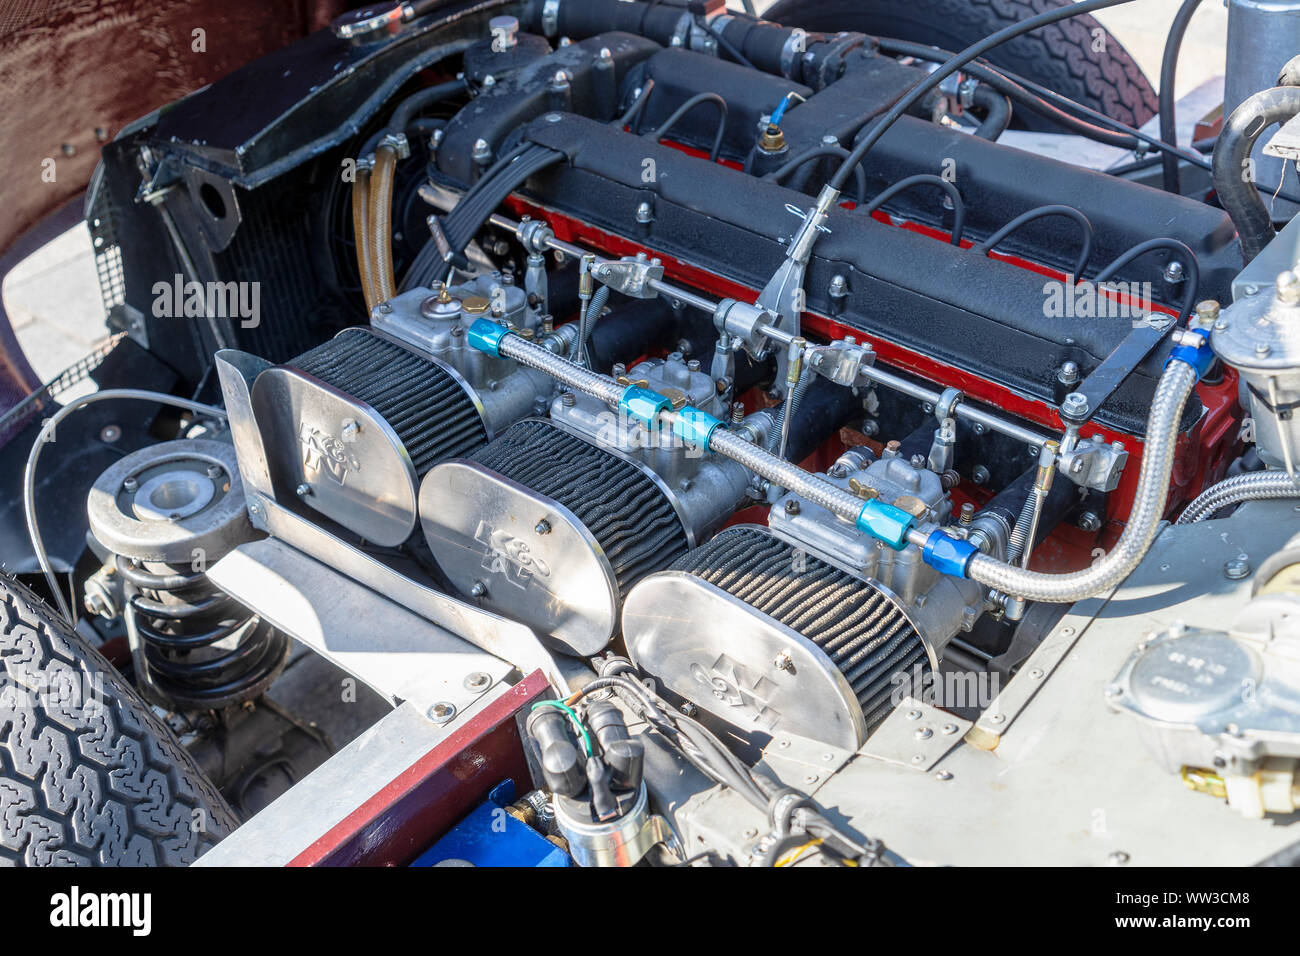 Dritto Classic 6 Cylinder Performance Aston Martin motore con carburatori Weber e aria K&N filtri montati Foto Stock